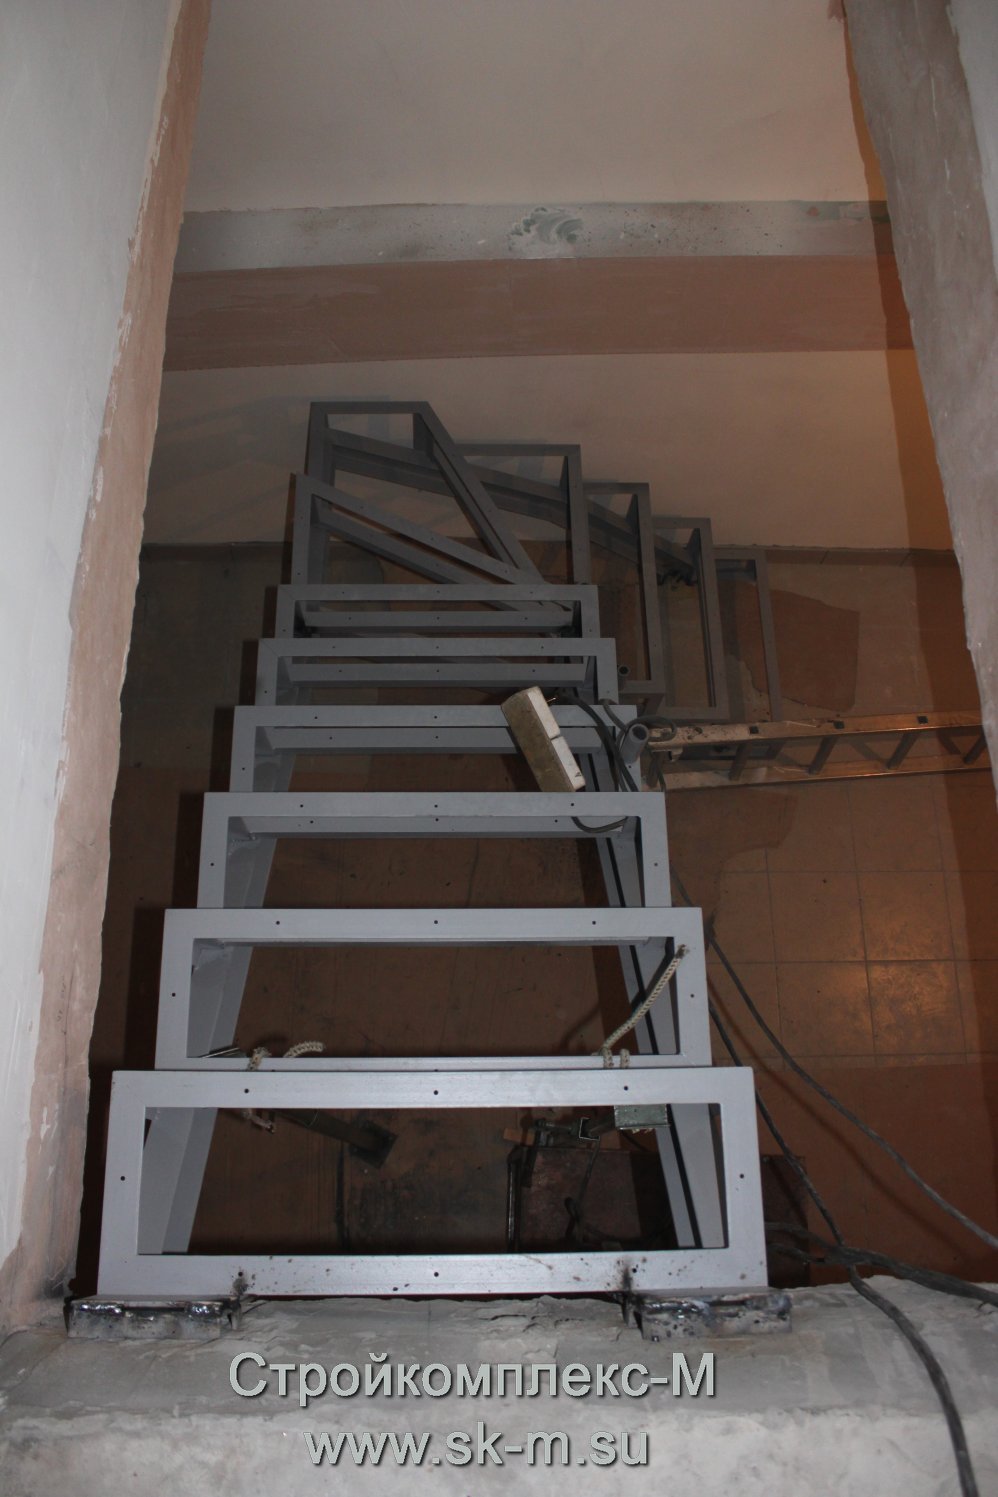 Металлическая лестница под зашивку. Изготовление и монтаж в Тюмени